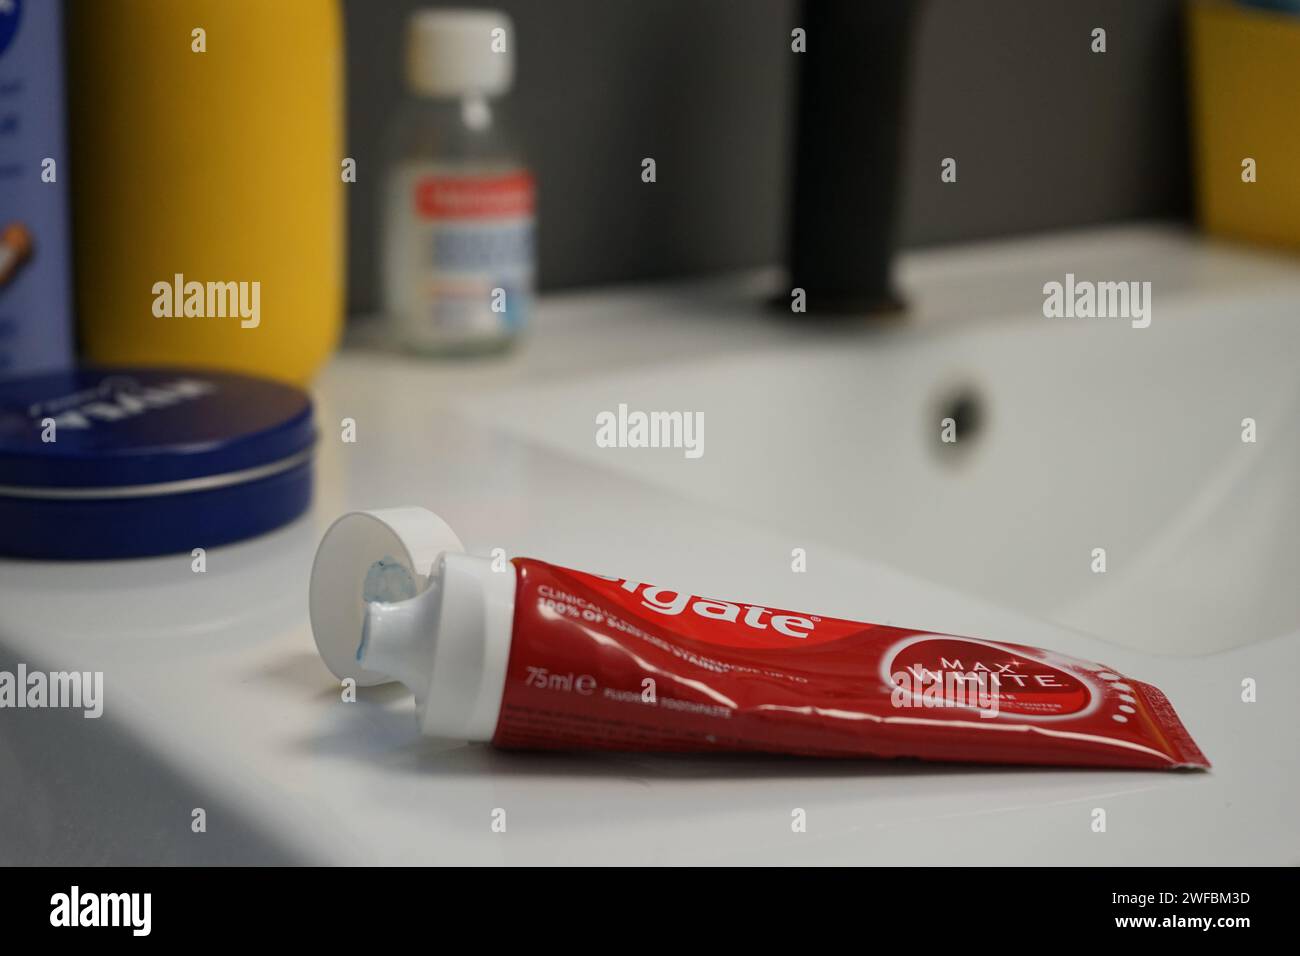 Colgate Max White Luminous Zahnpasta für weißere Zähne rund um die Uhr und Kampf gegen Karies und Zahnstein - Röhre auf einer Badezimmertheke Stockfoto